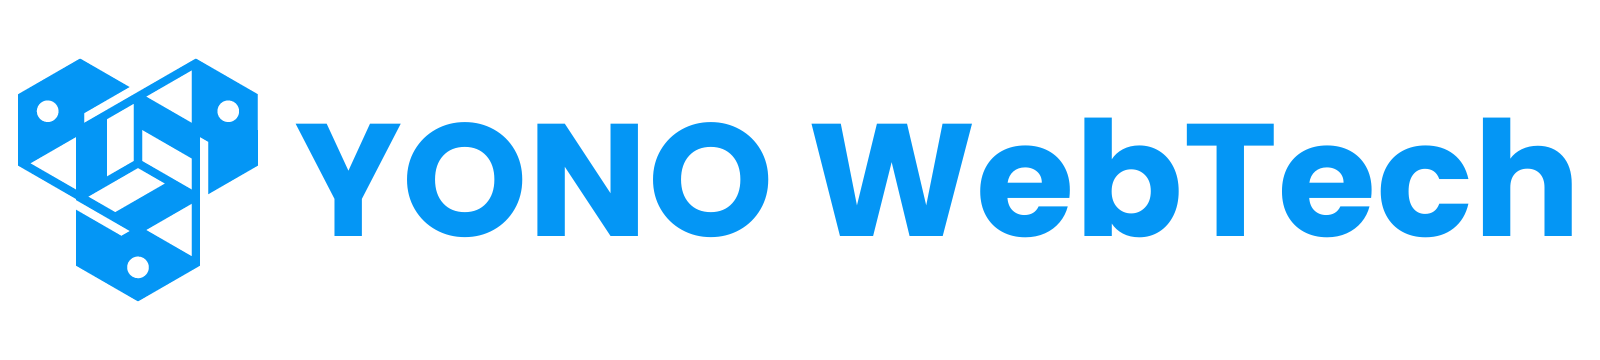 YONO WebTech